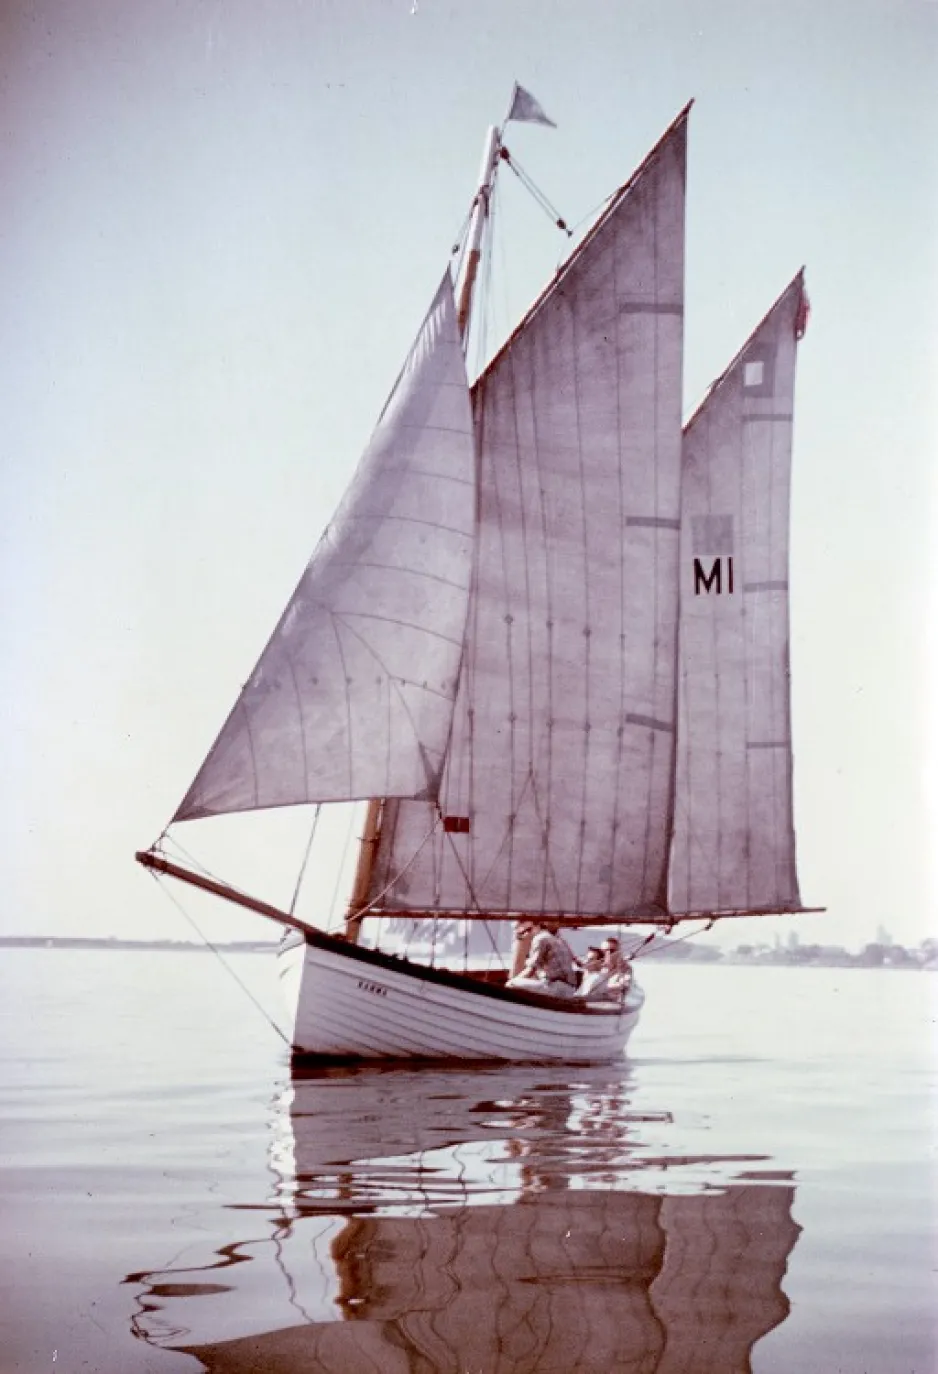 Un bateau en bois blanc doté de grandes voiles glisse sur la surface calme d’un lac, avec trois personnes visibles à son bord.